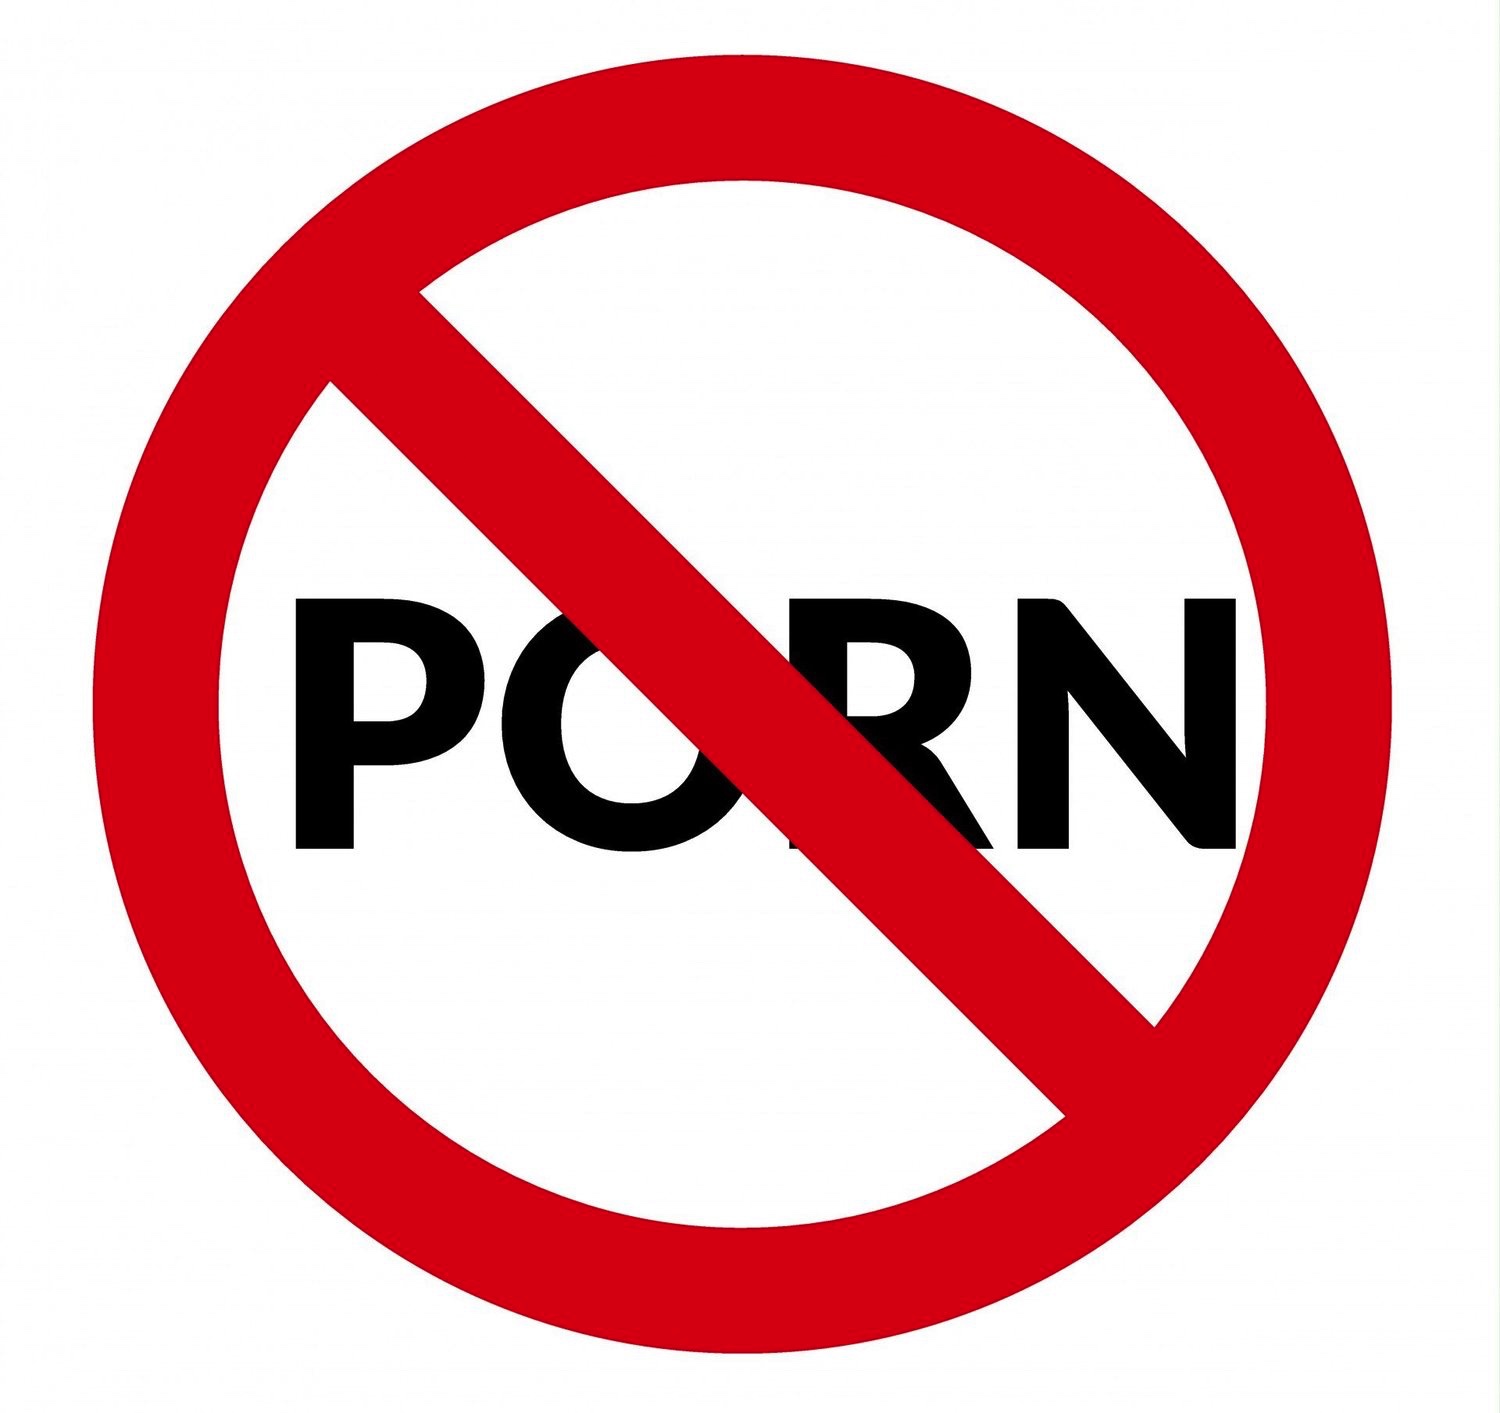 No porn